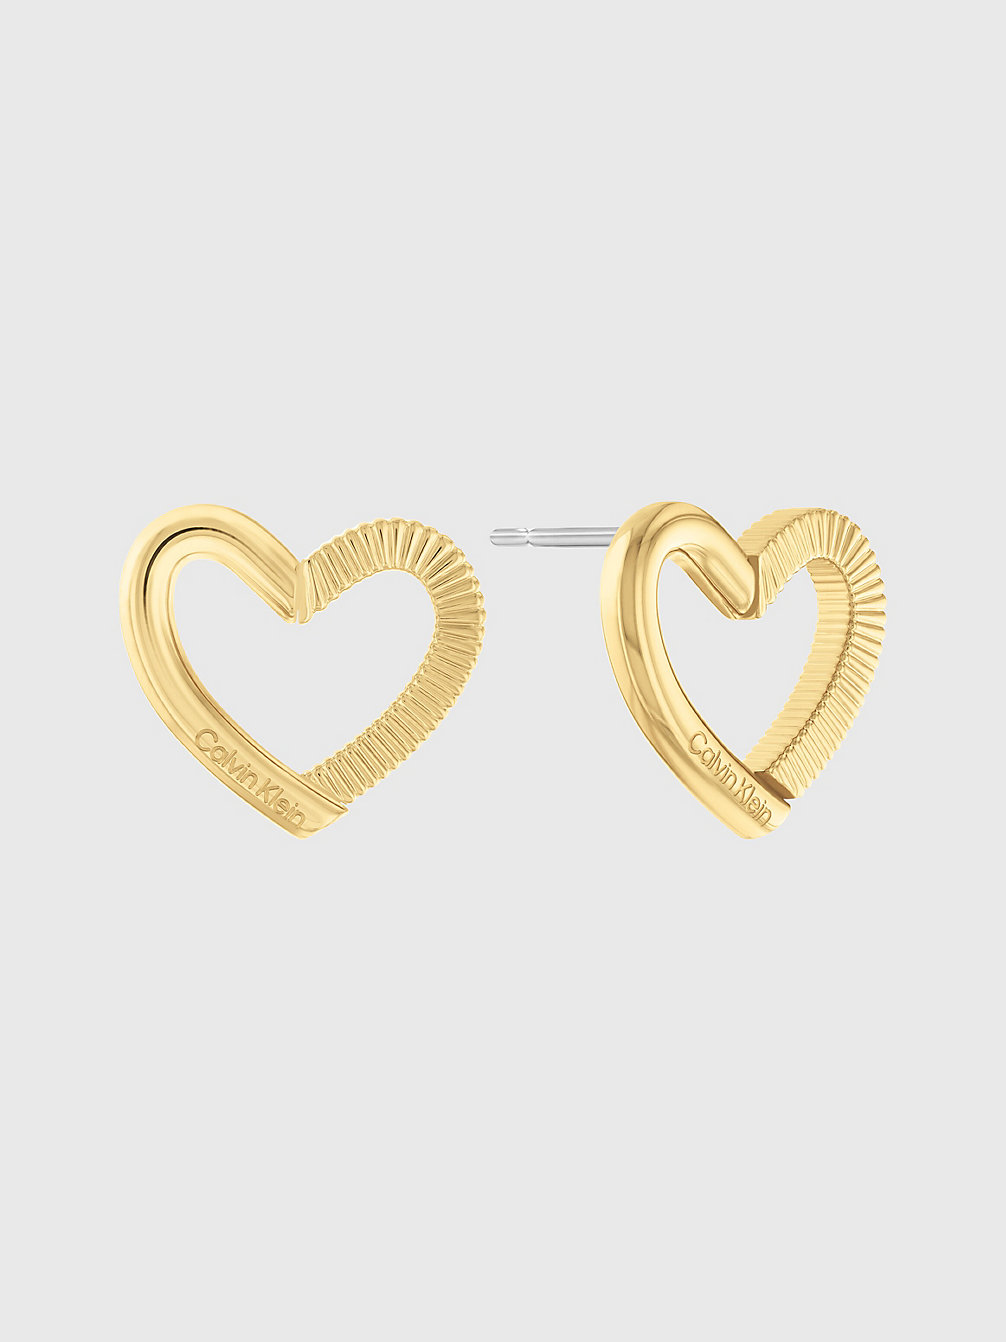 GOLD Earrings - Minimalistic Hearts undefined women Calvin Klein